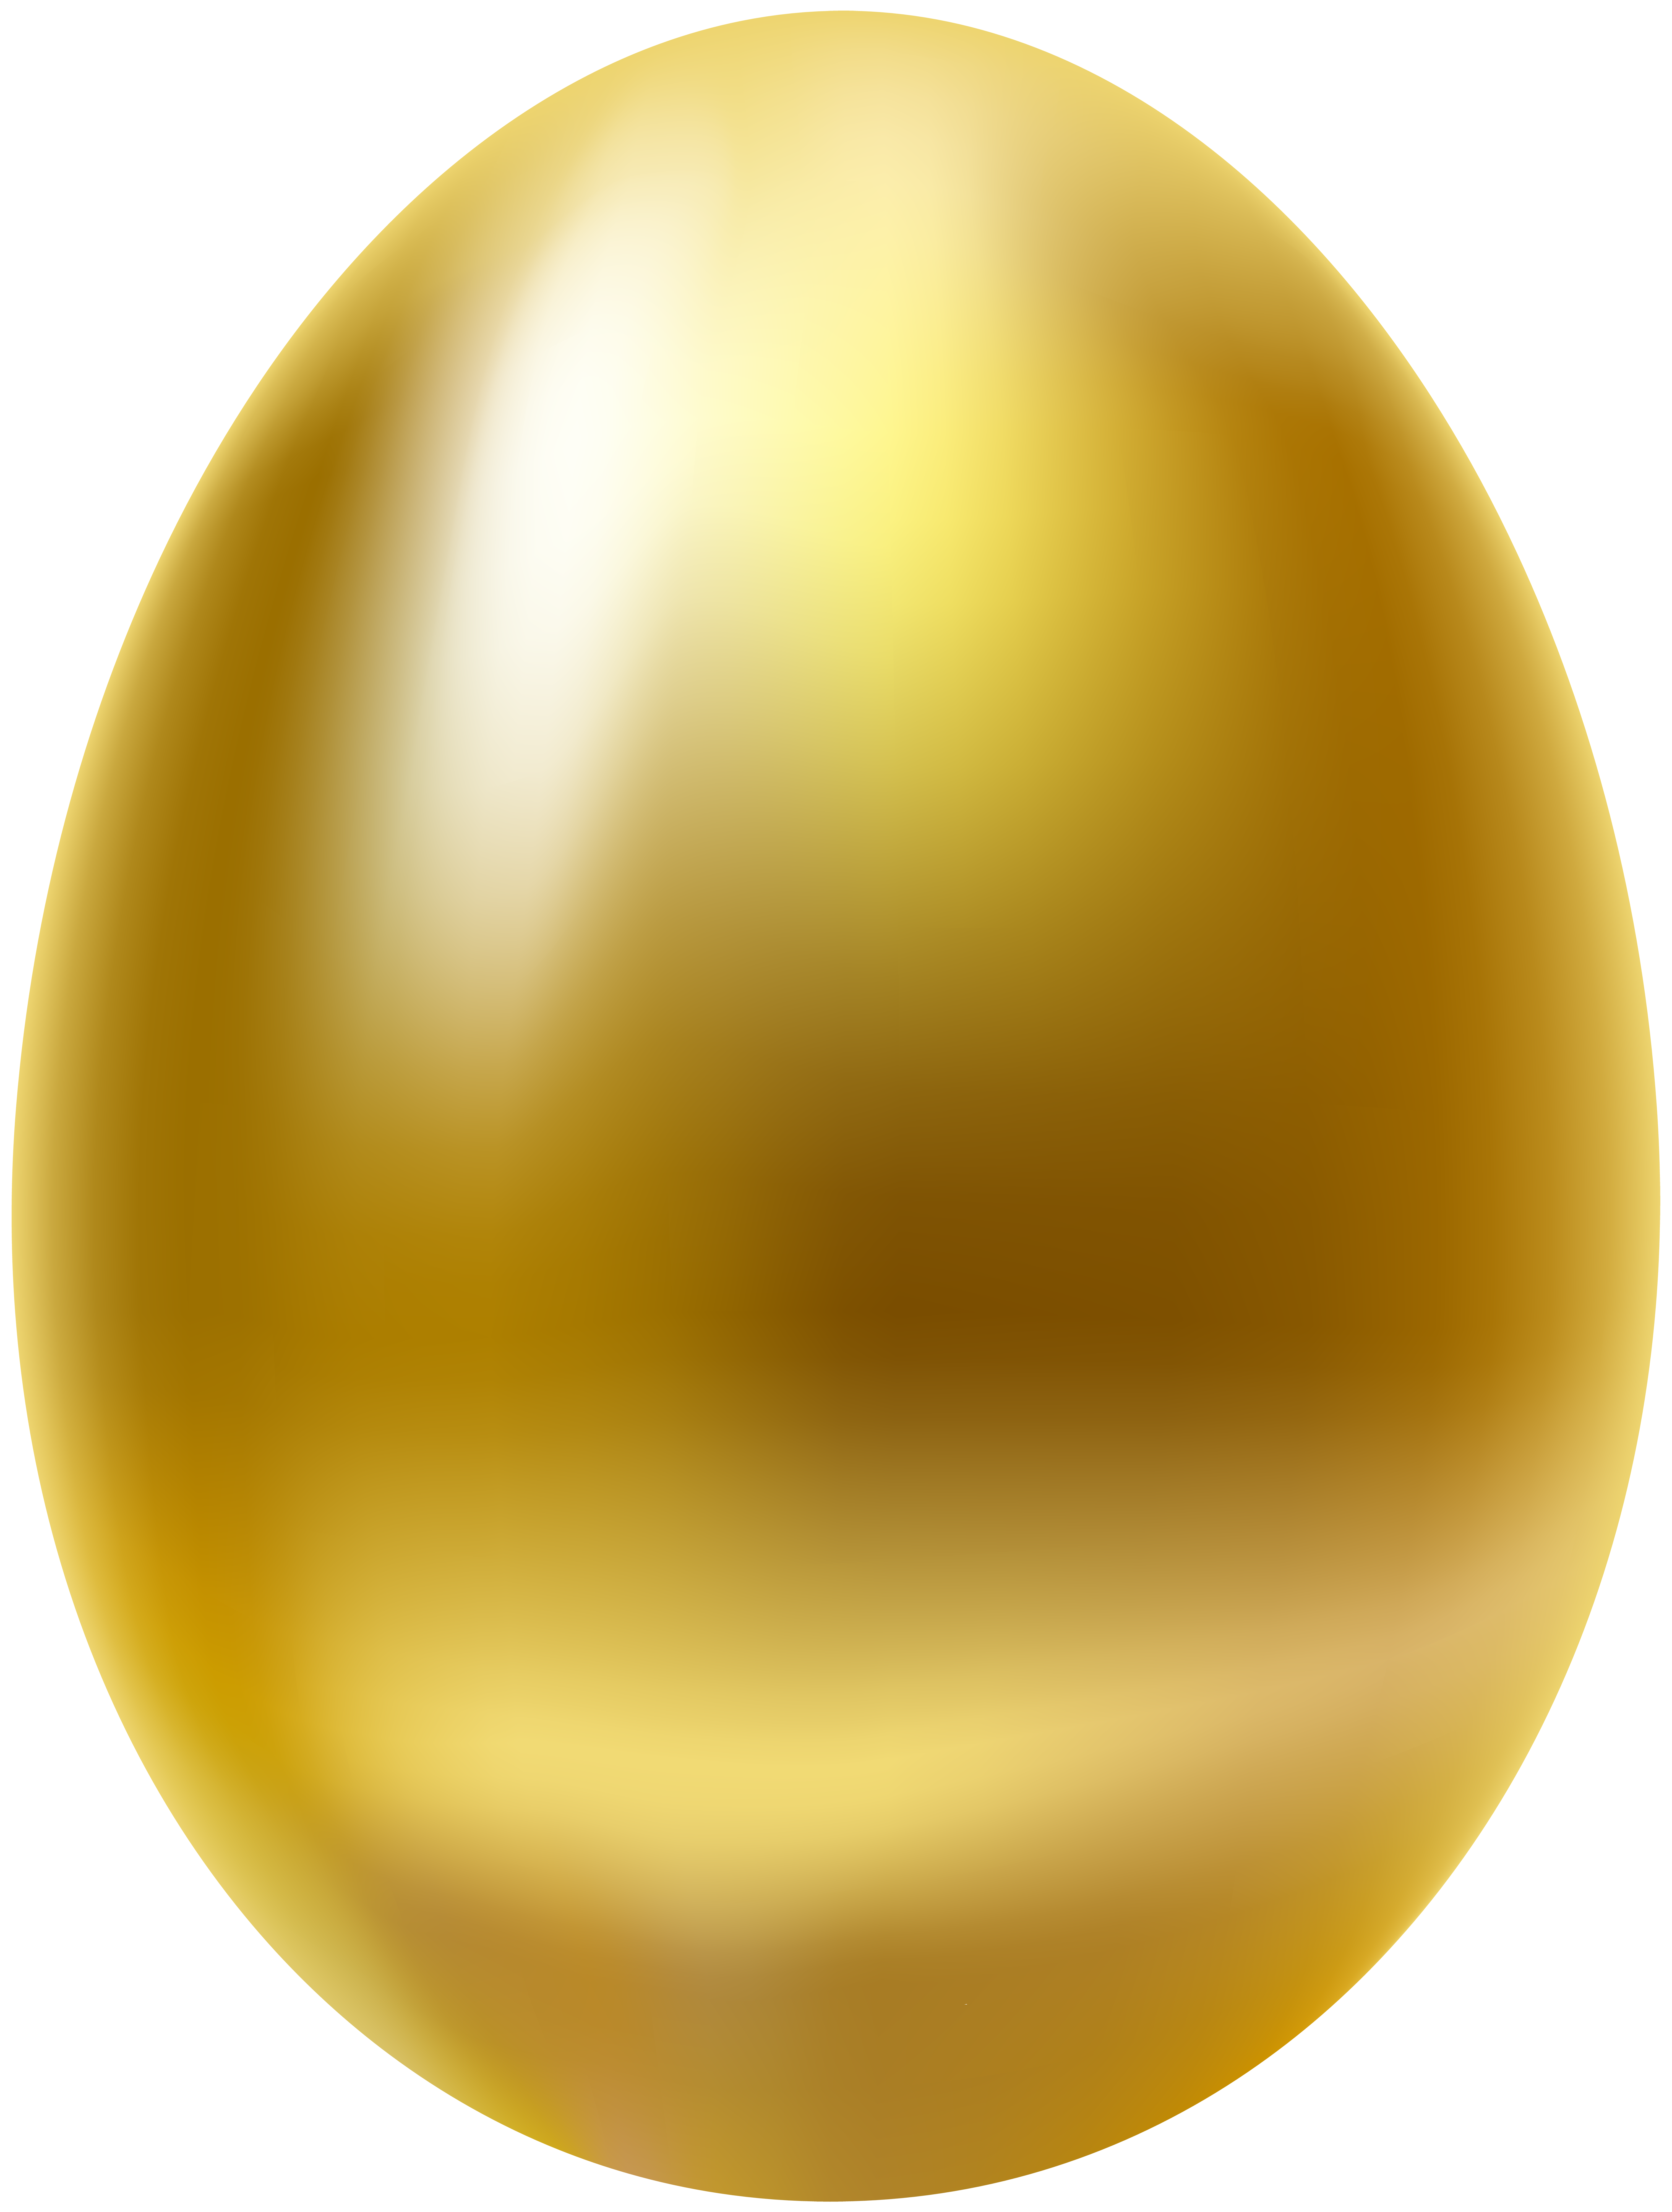 Найдите золотое яйцо. Золотое яйцо курочки Рябы. Яйцо из сказки Курочка Ряба. Золотое яичко. Яйцо золото.